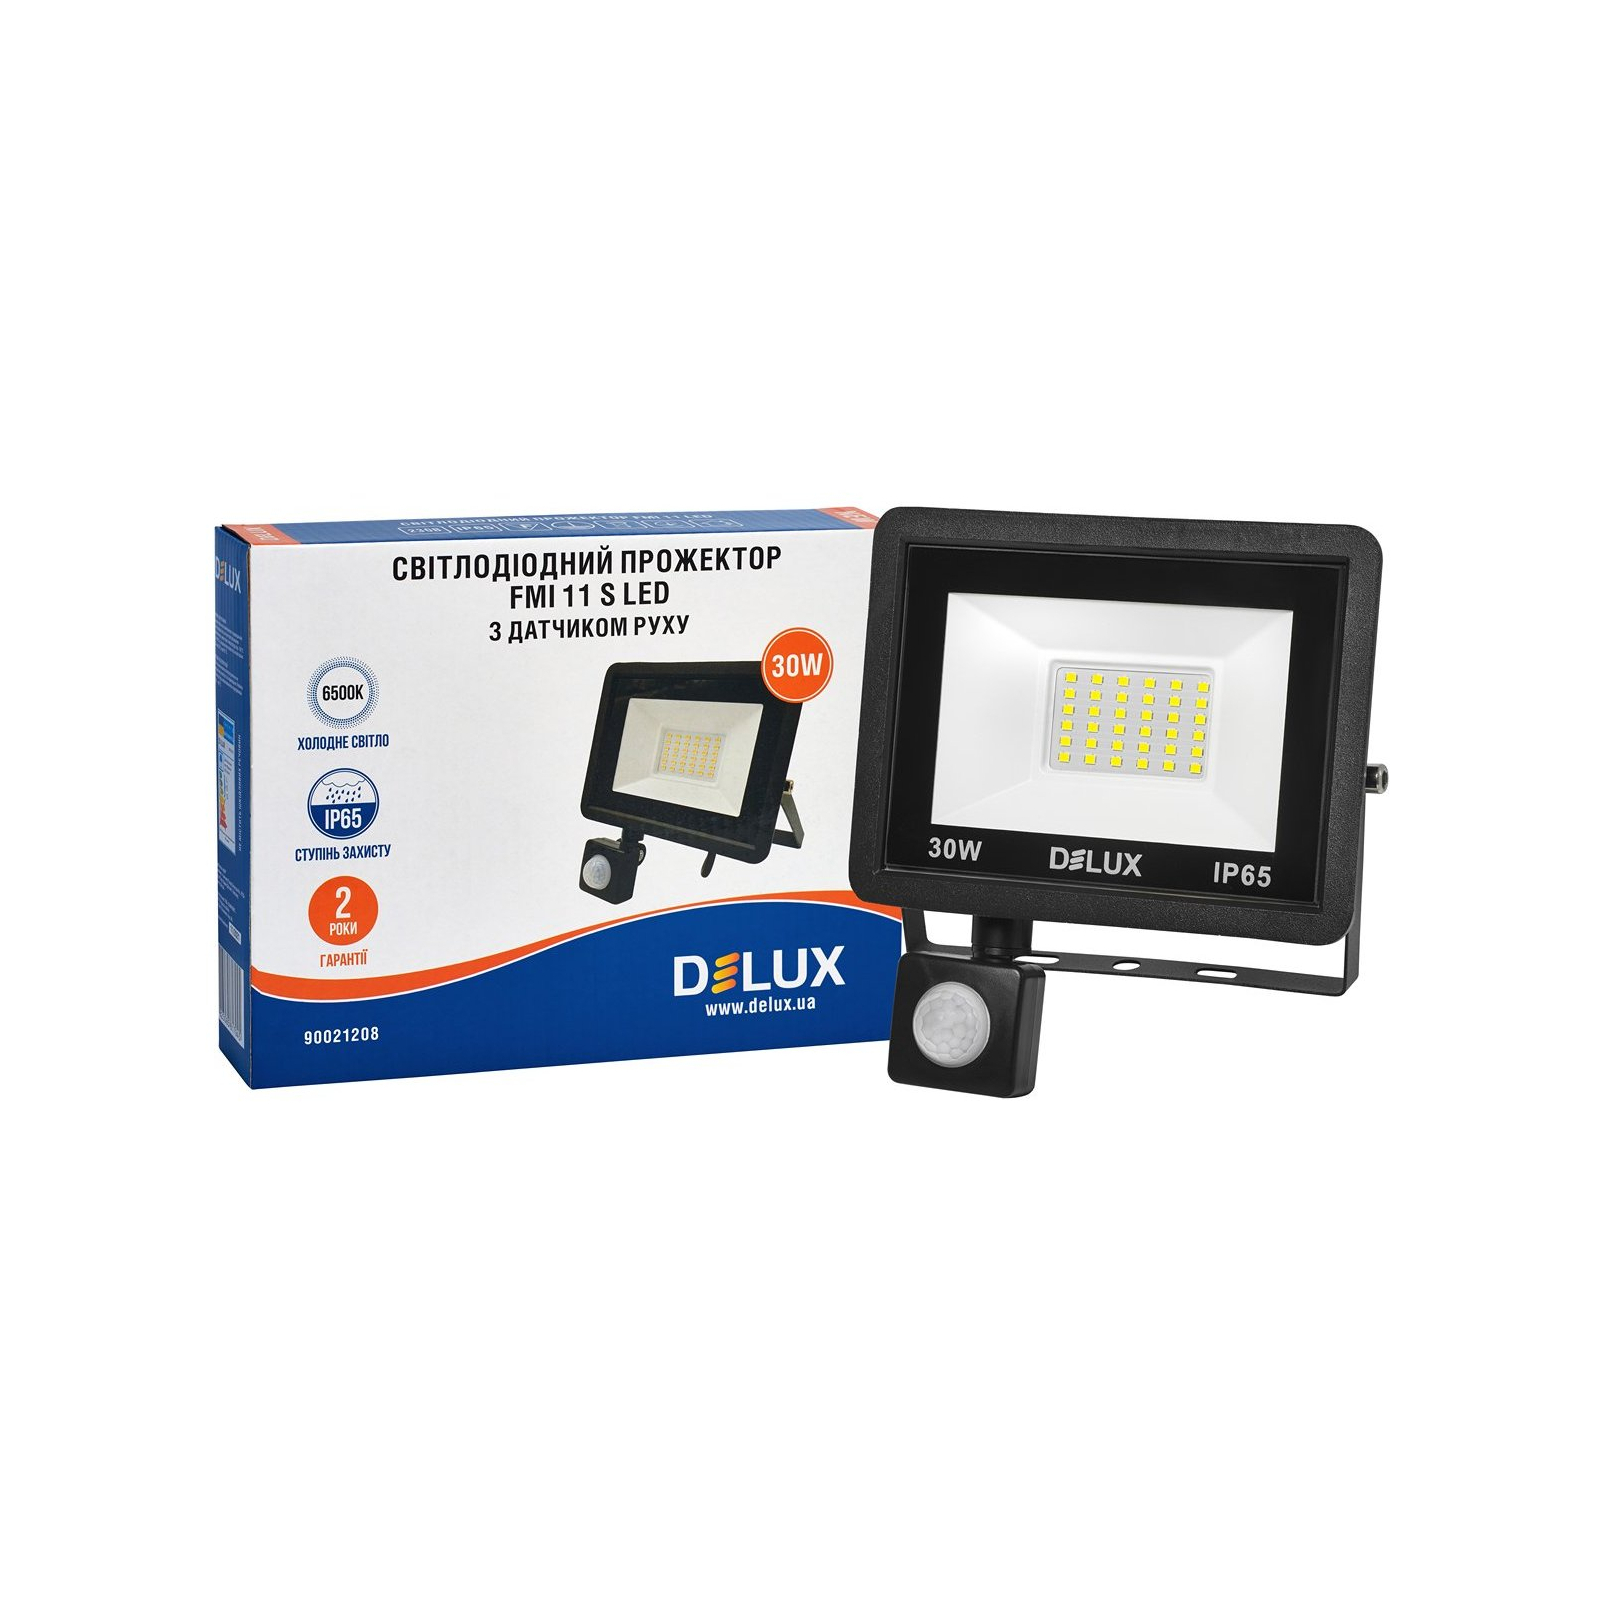 Прожектор Delux FMI 11 S LED 30Вт 6500K_IP65 (90021208) зображення 4